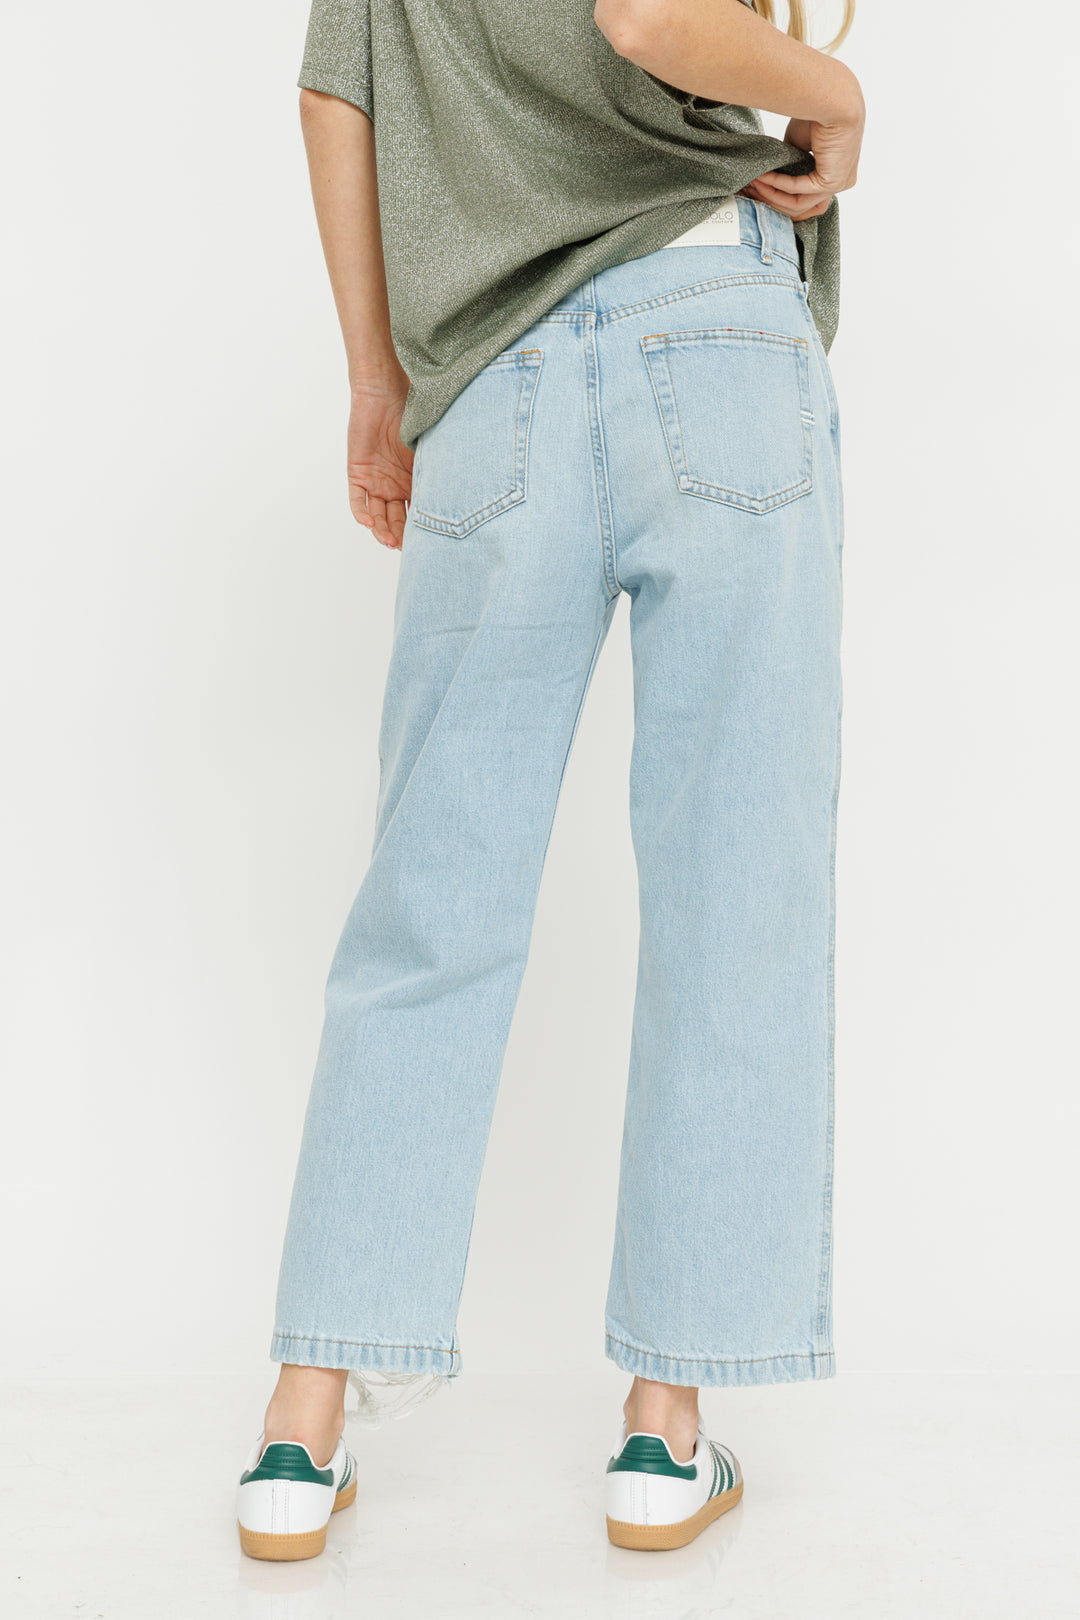 ג'ינס Riped בצבע כחול בהיר